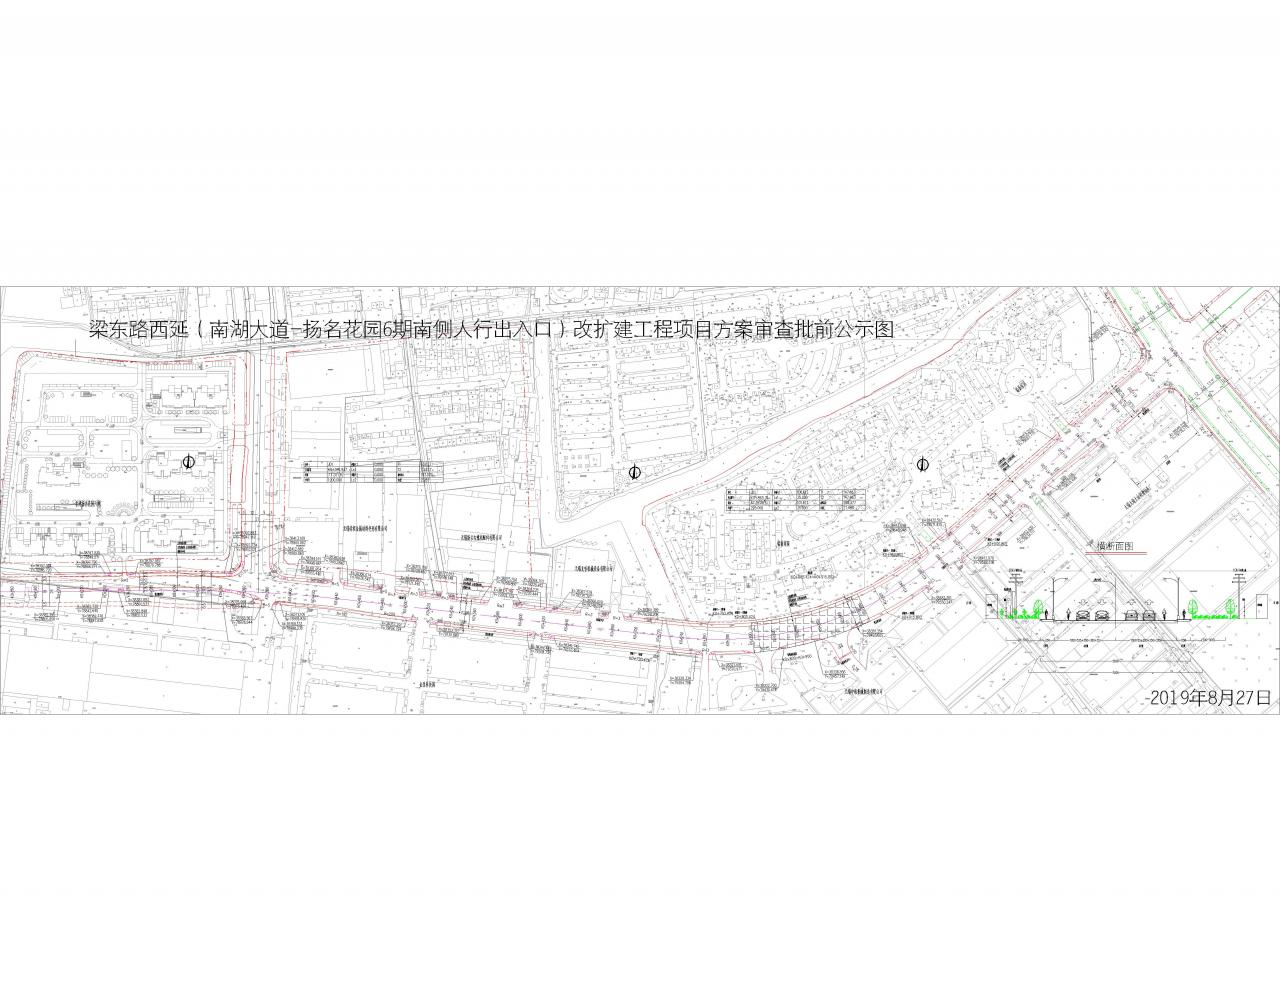 梁东路(南湖大道-扬名花园6期南侧人行出入口)改扩建工程项目规划设计方案审查批前公示